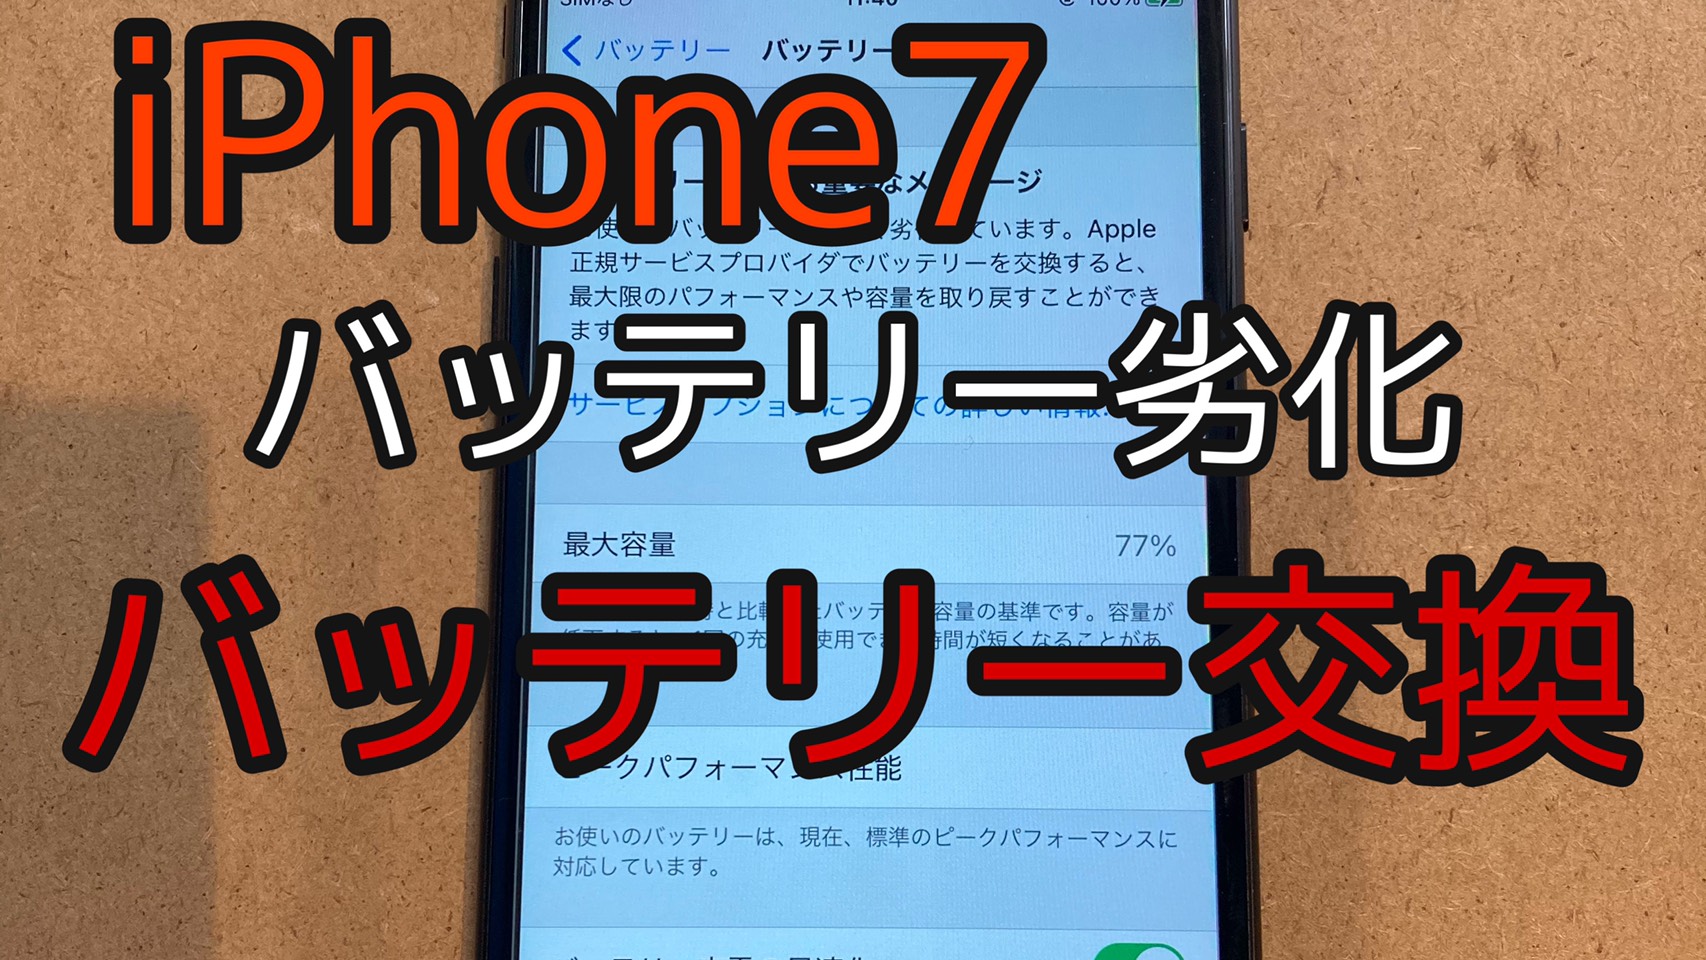 iPhone7アイキャッチ画像